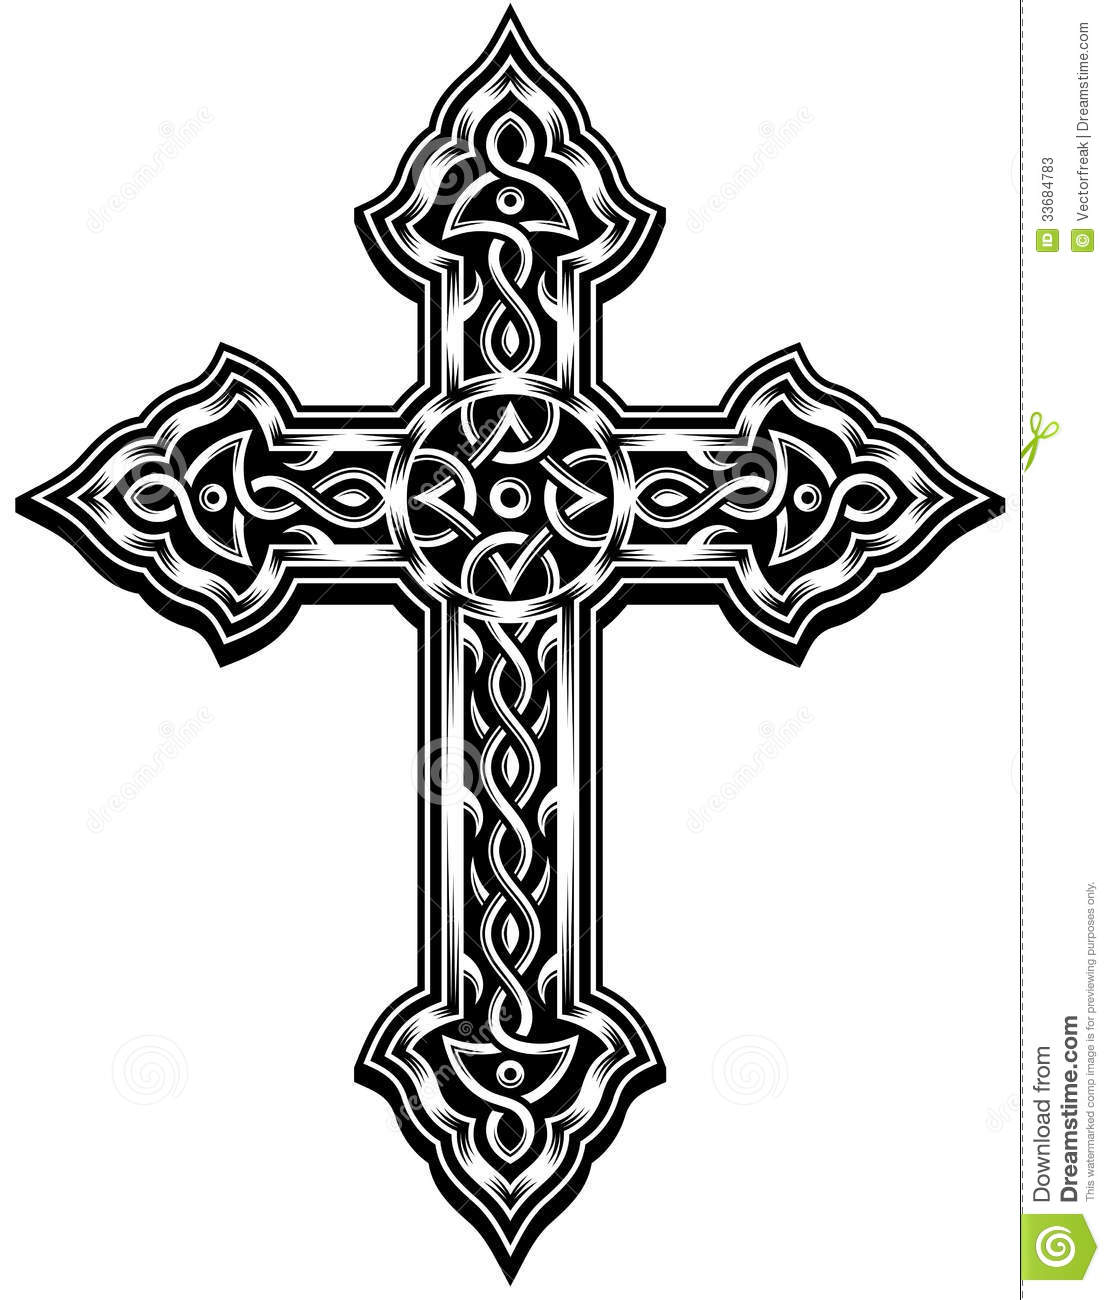 Fully Editable Vector Illustration Of Ornate Cross In Black On